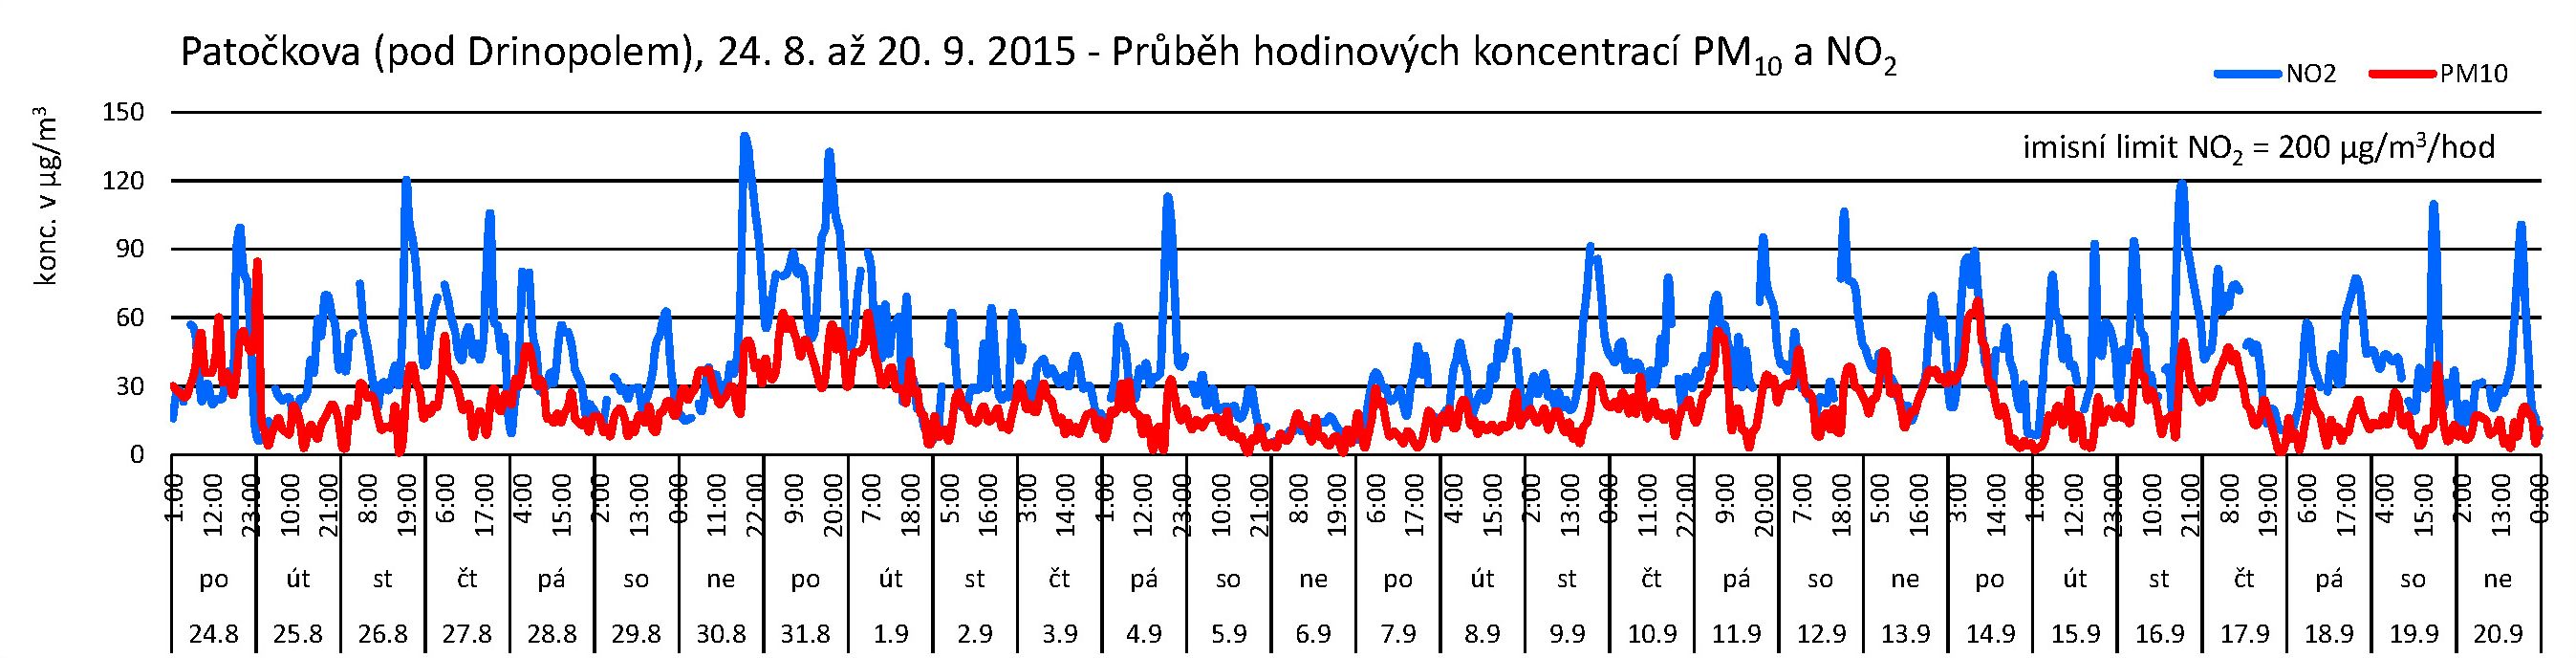 Patočkova - 09.2015 - NO2 a PM10